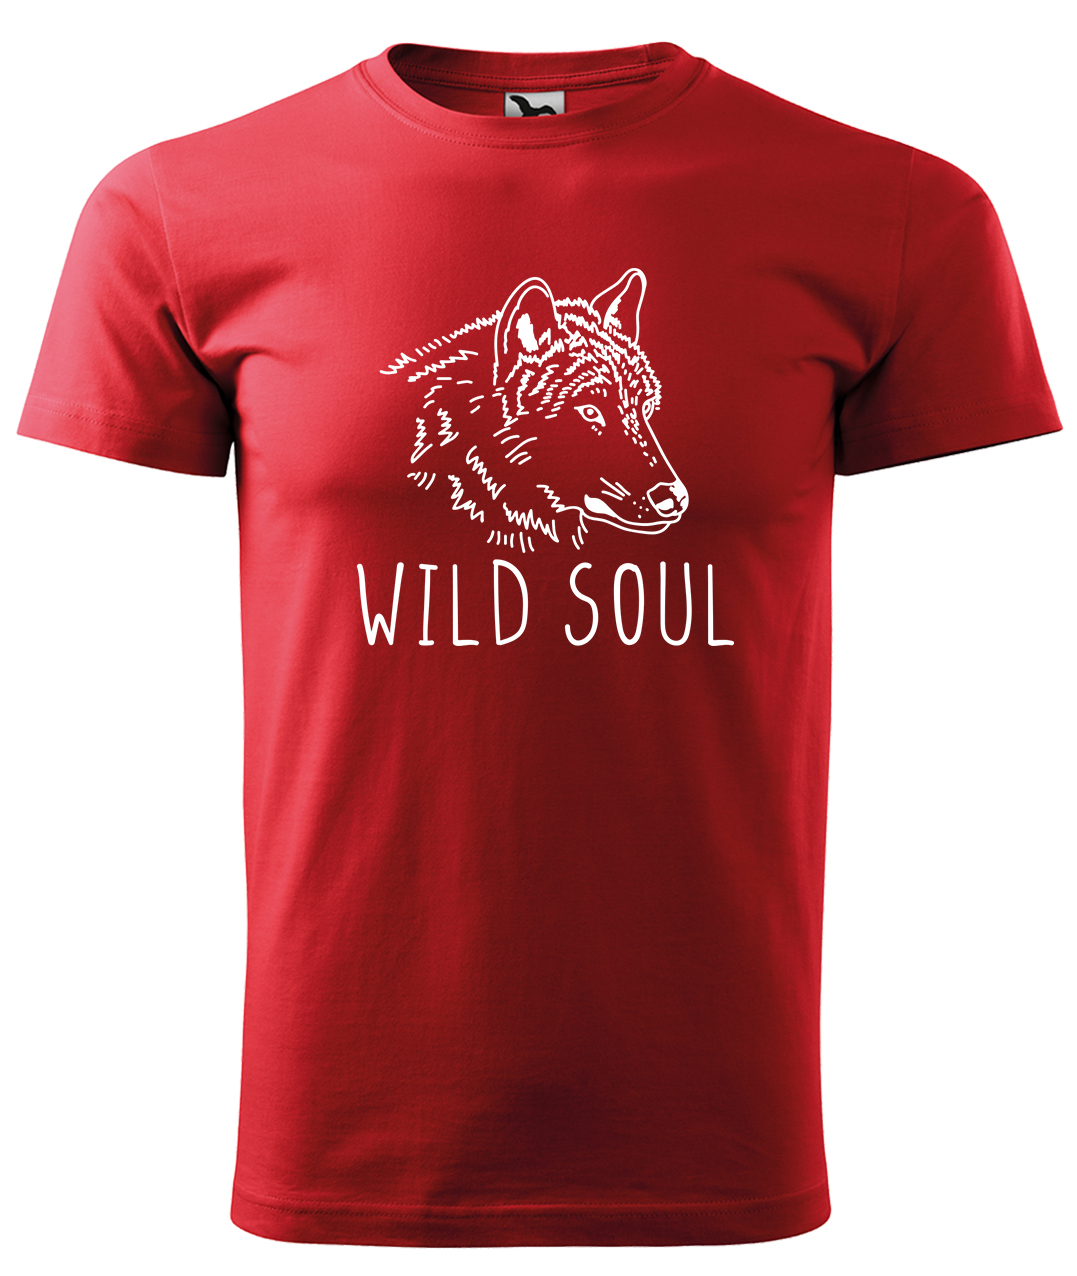 Dětské tričko s vlkem - Wild soul Velikost: 12 let / 158 cm, Barva: Červená (07), Délka rukávu: Krátký rukáv